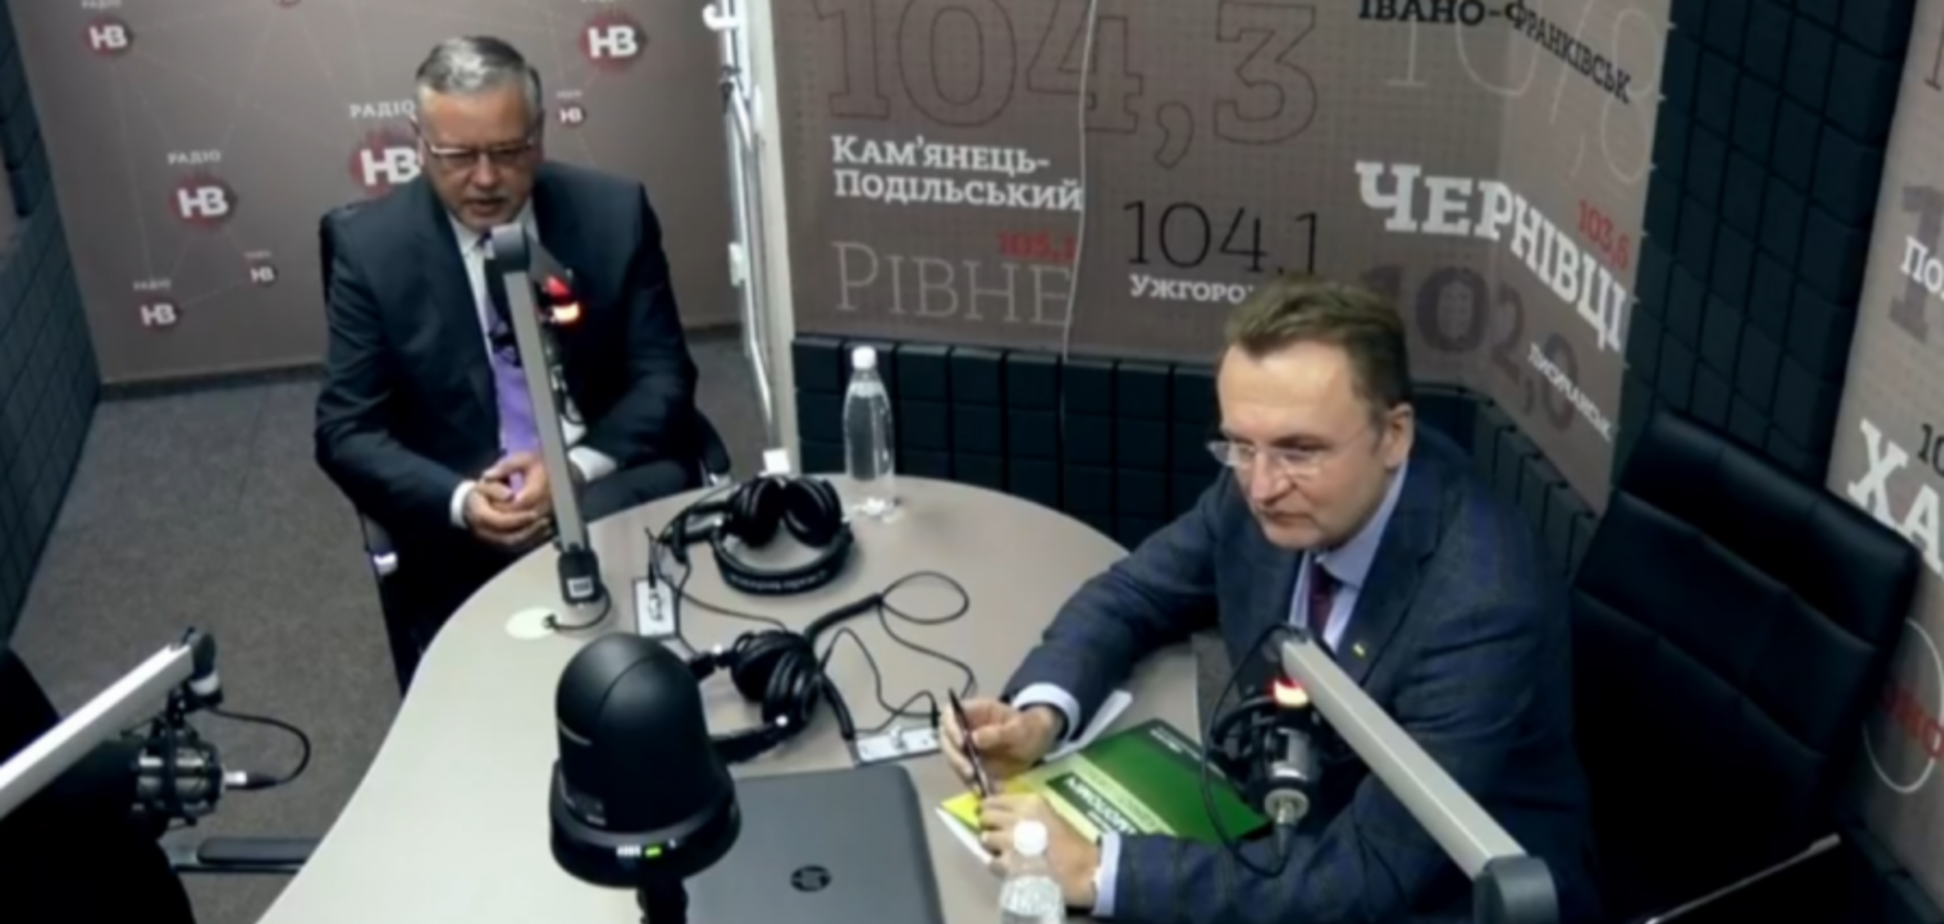 Обсуждение союза Гриценко и Садового: в СМИ попал тайный документ